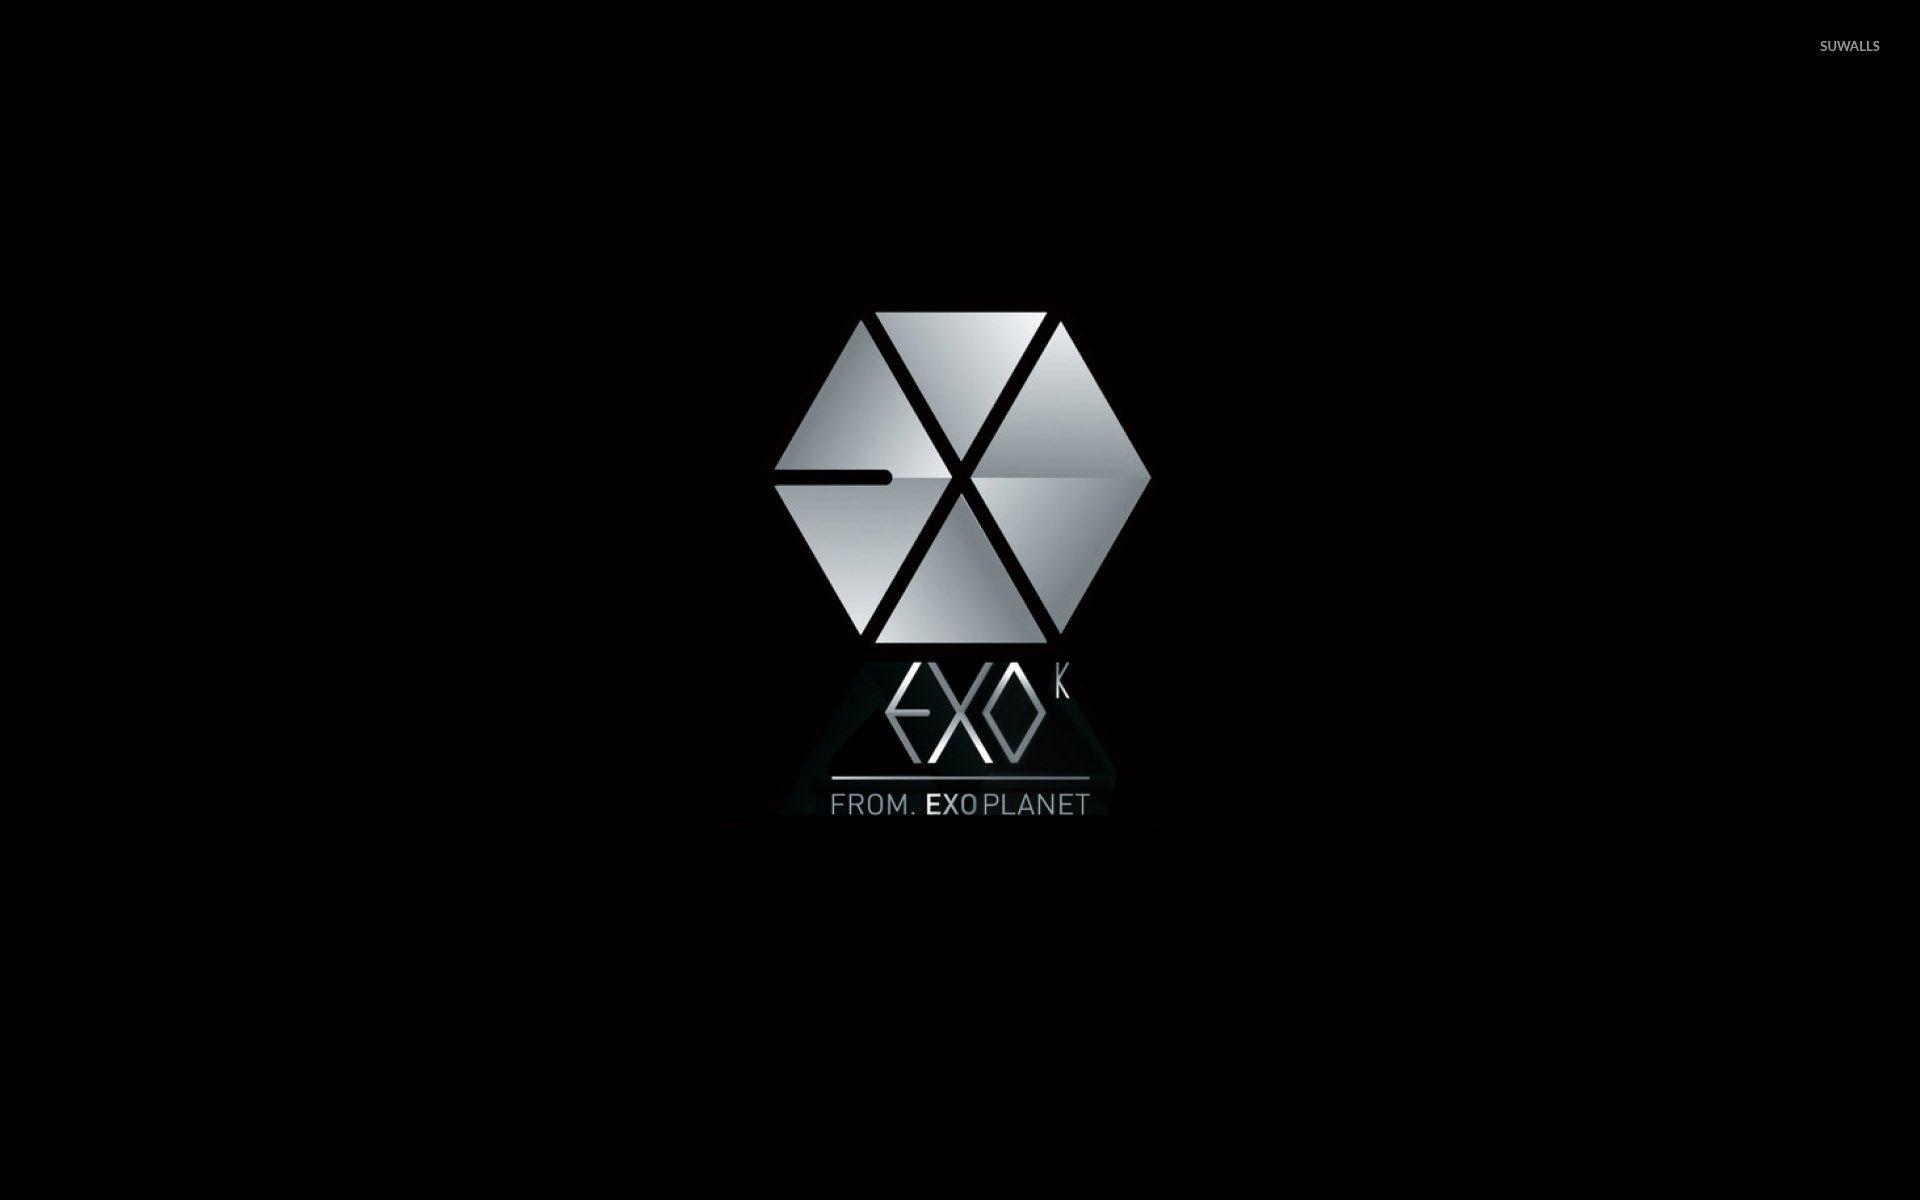 Exo Desktop Wallpaper. Exo logo wallpaper, Exo logo, Exo